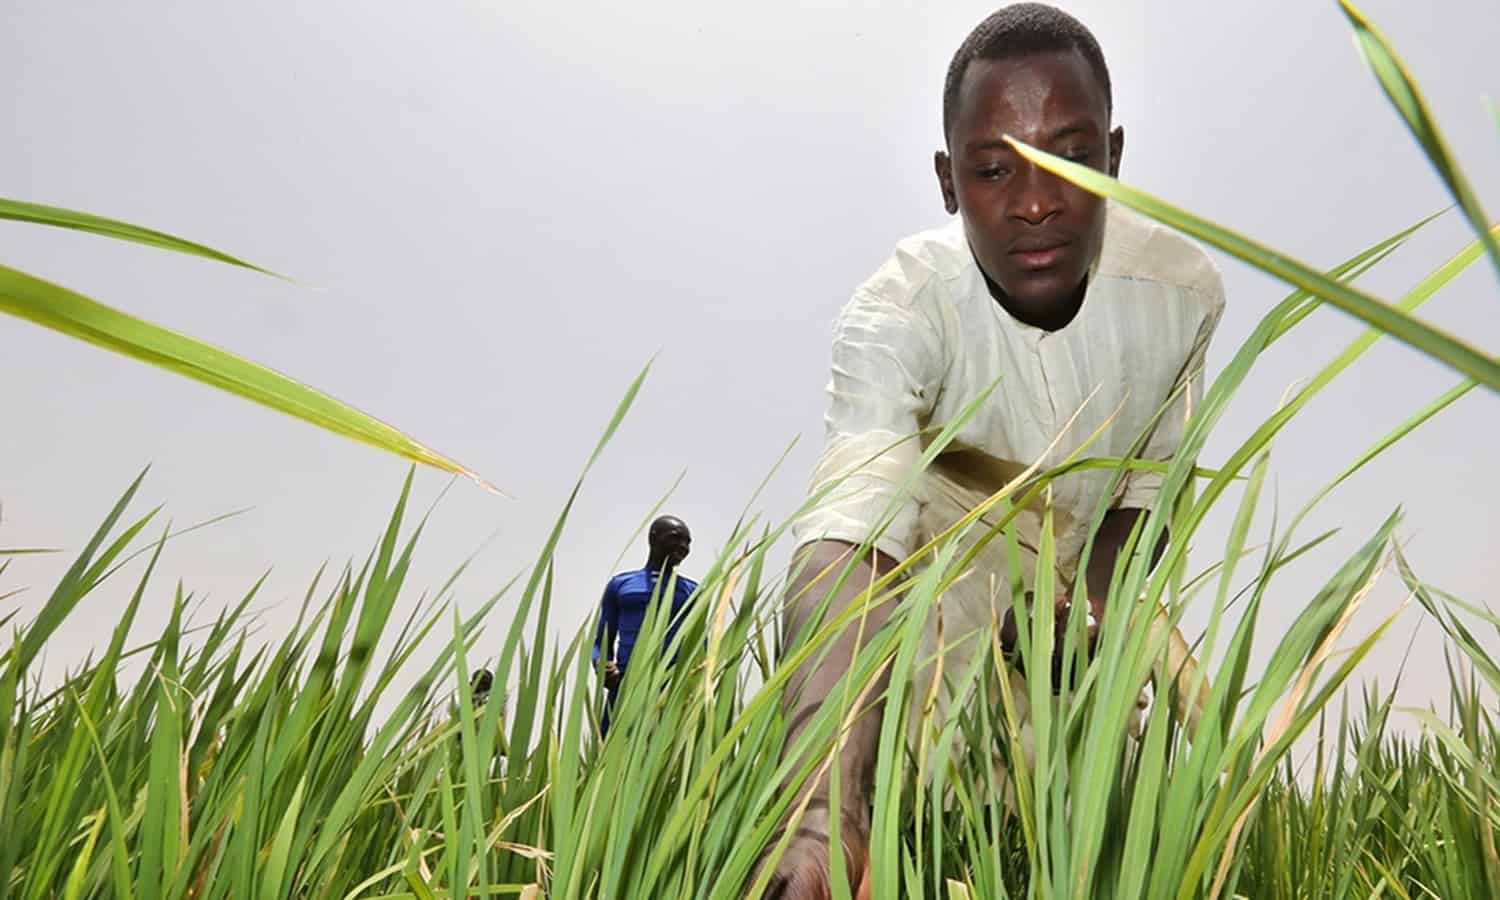 稻米强化系统”(SRI)是使农民更接近食物自给自足在50多个国家的帮助下CORAF之类的组织。